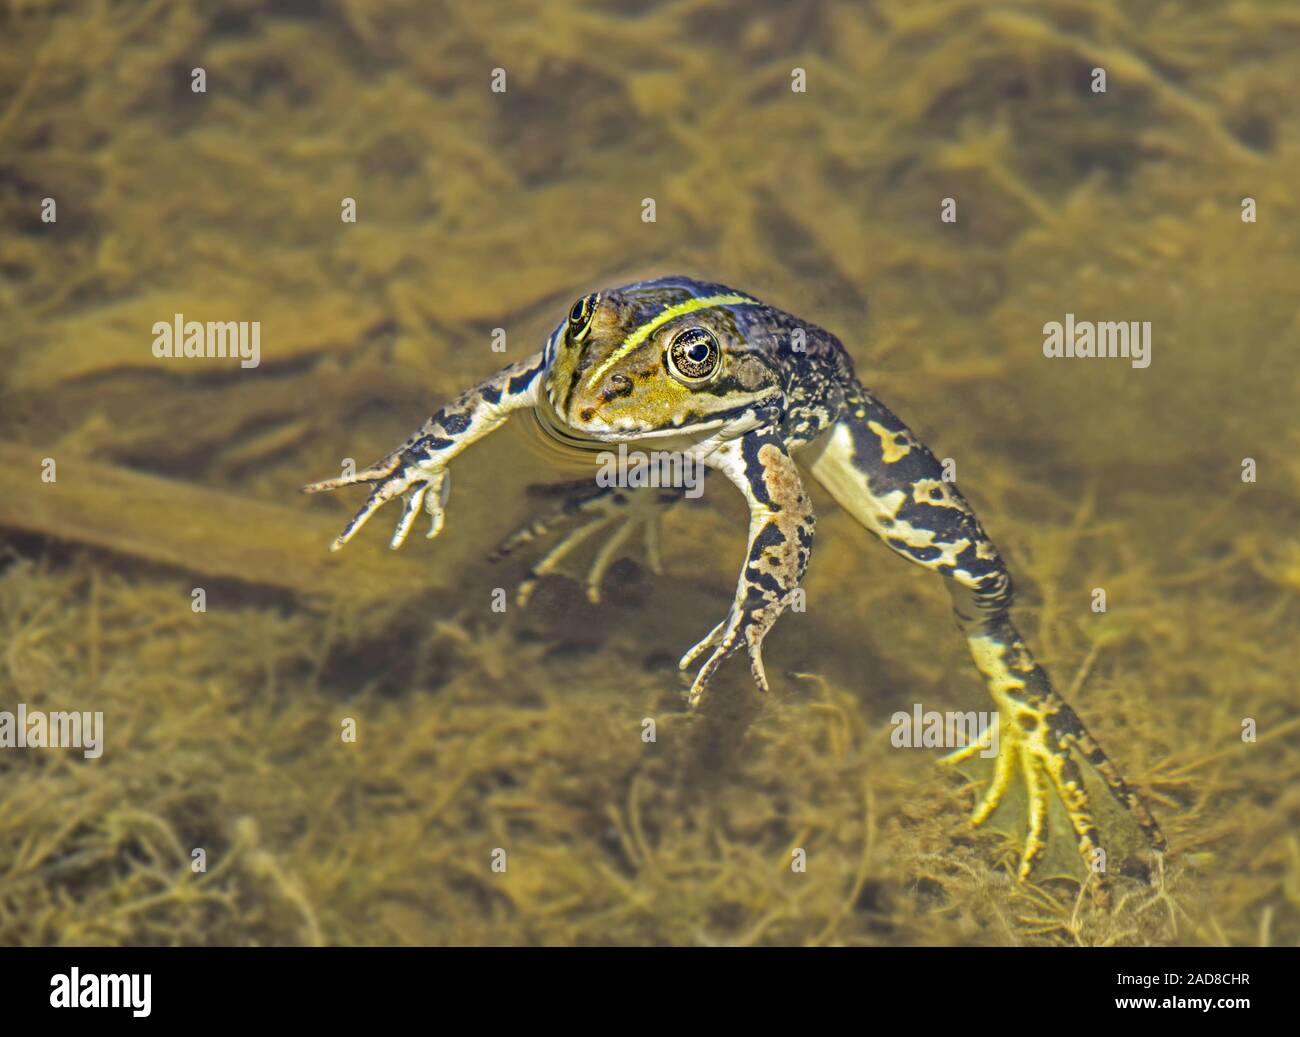 Marsh frog 'Rana ridibunda' Stock Photo